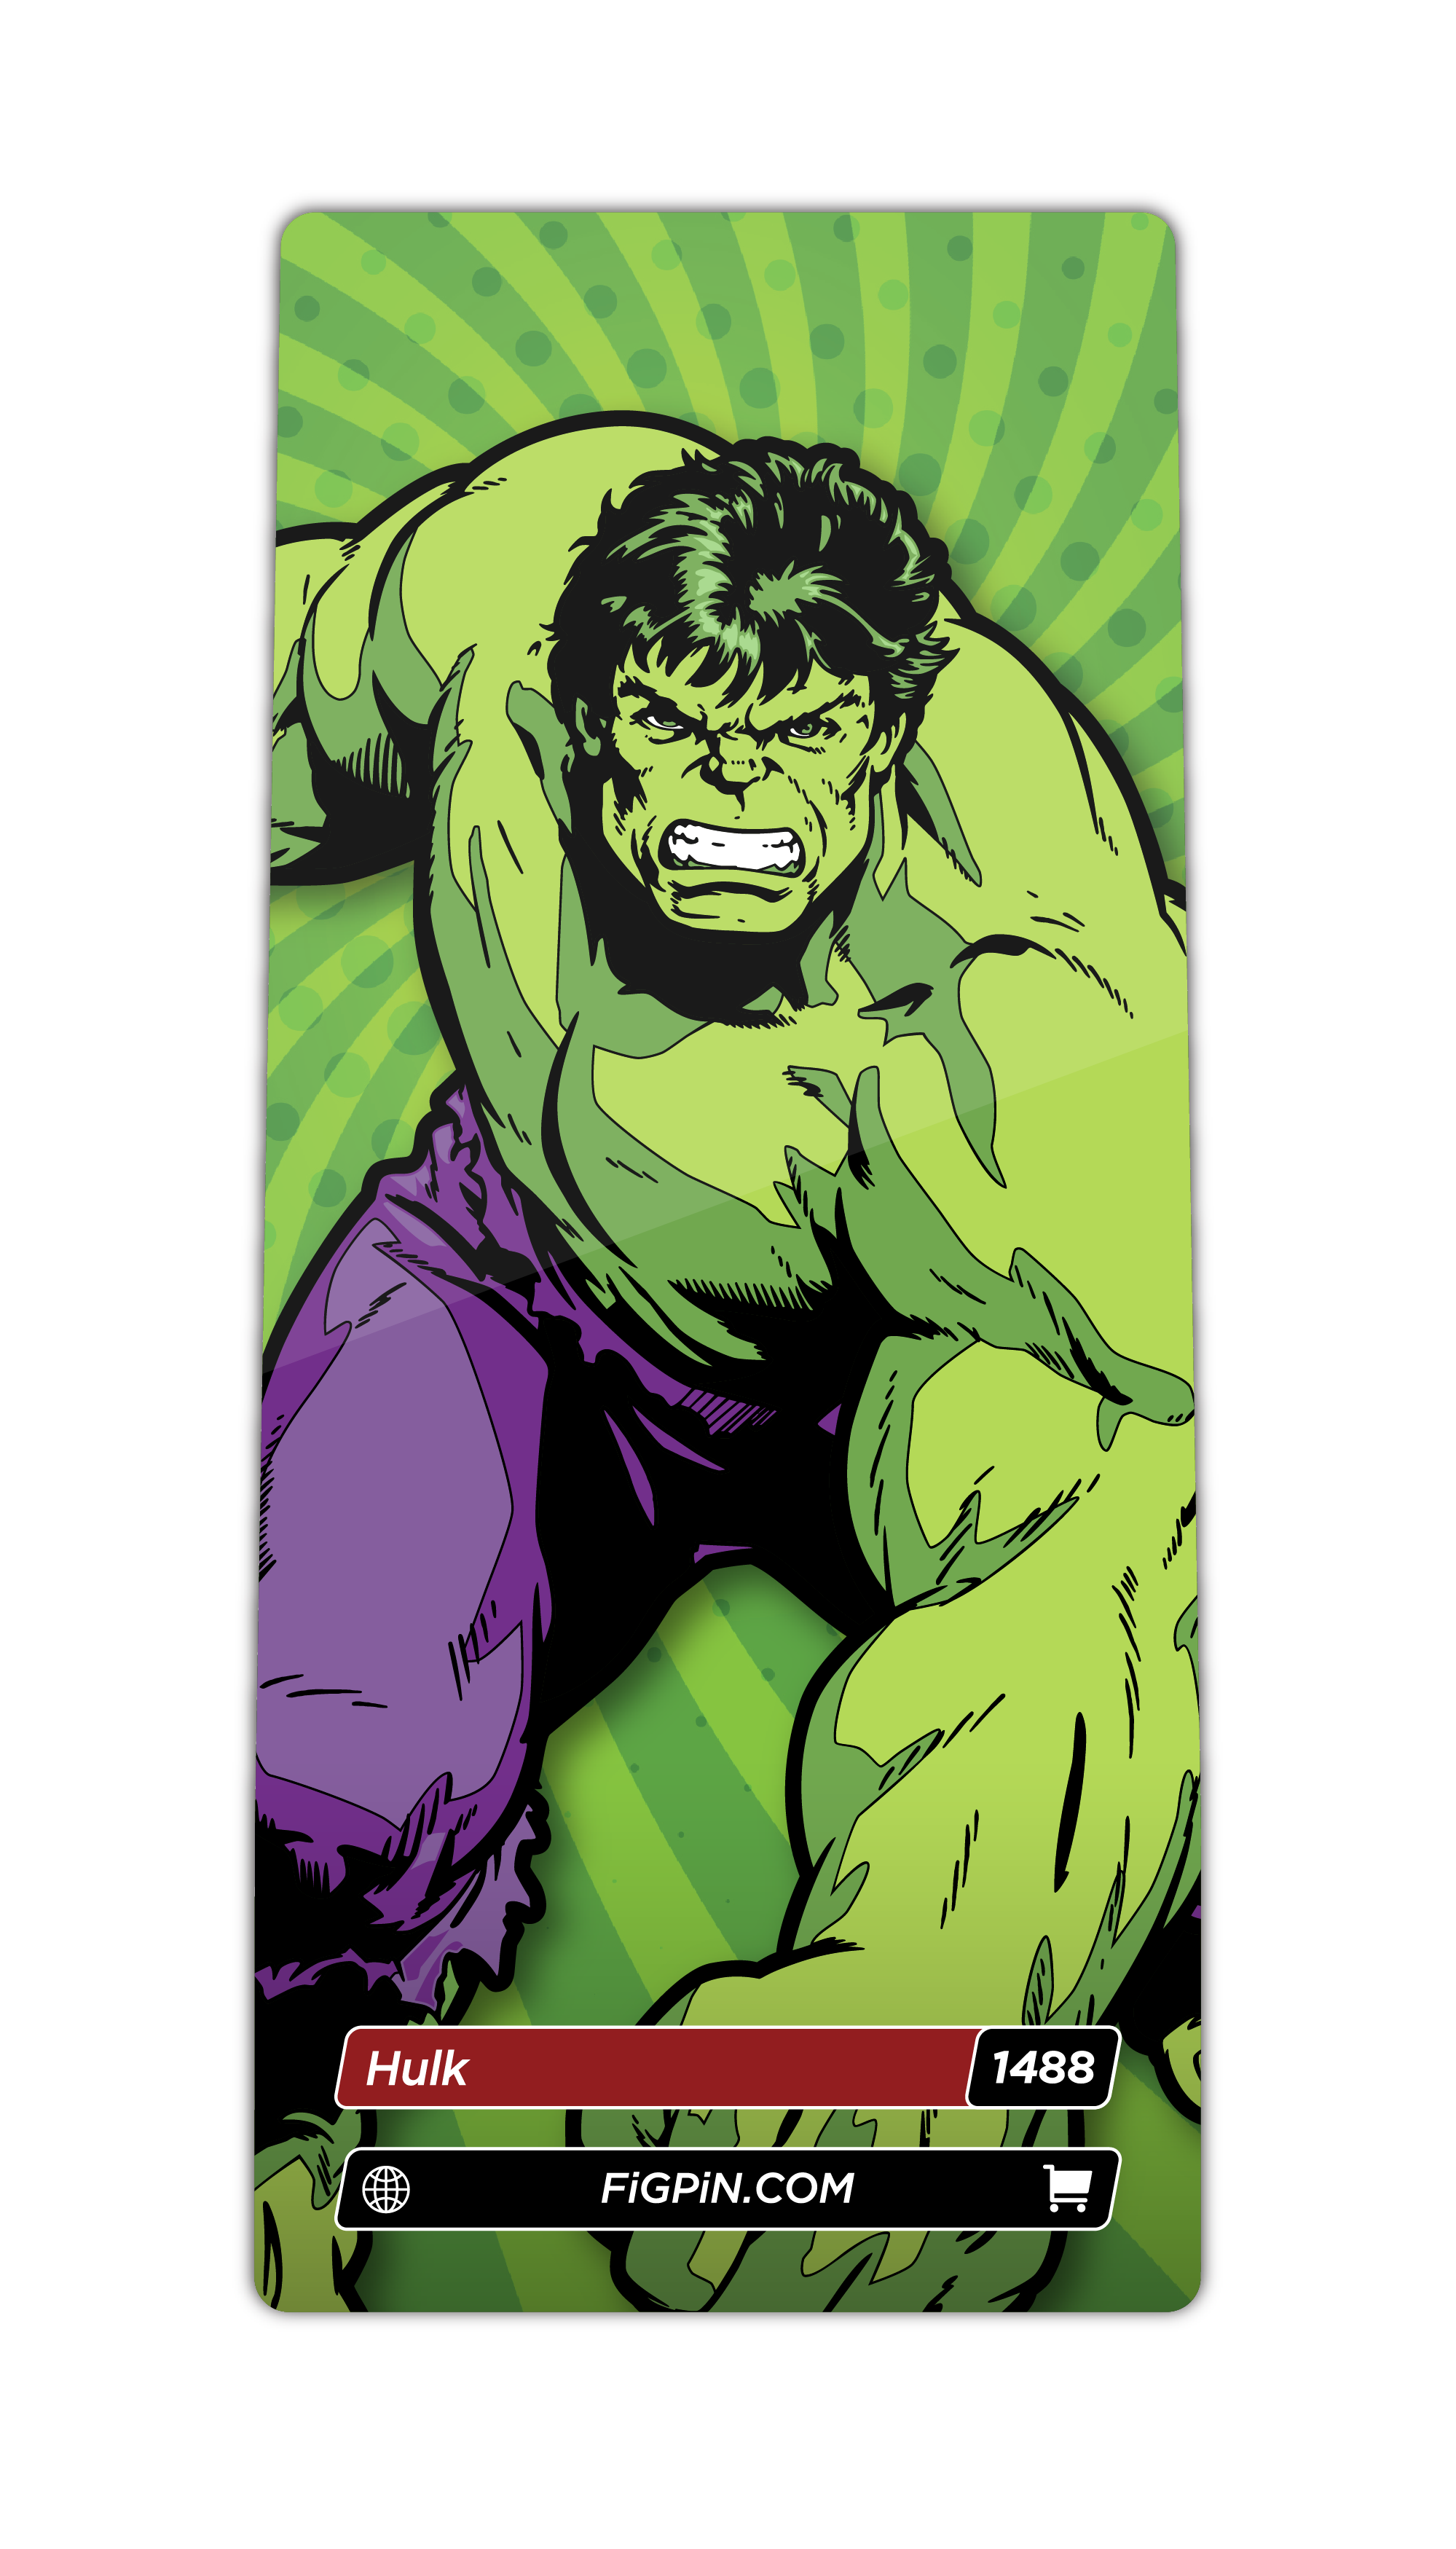 Hulk (1488)